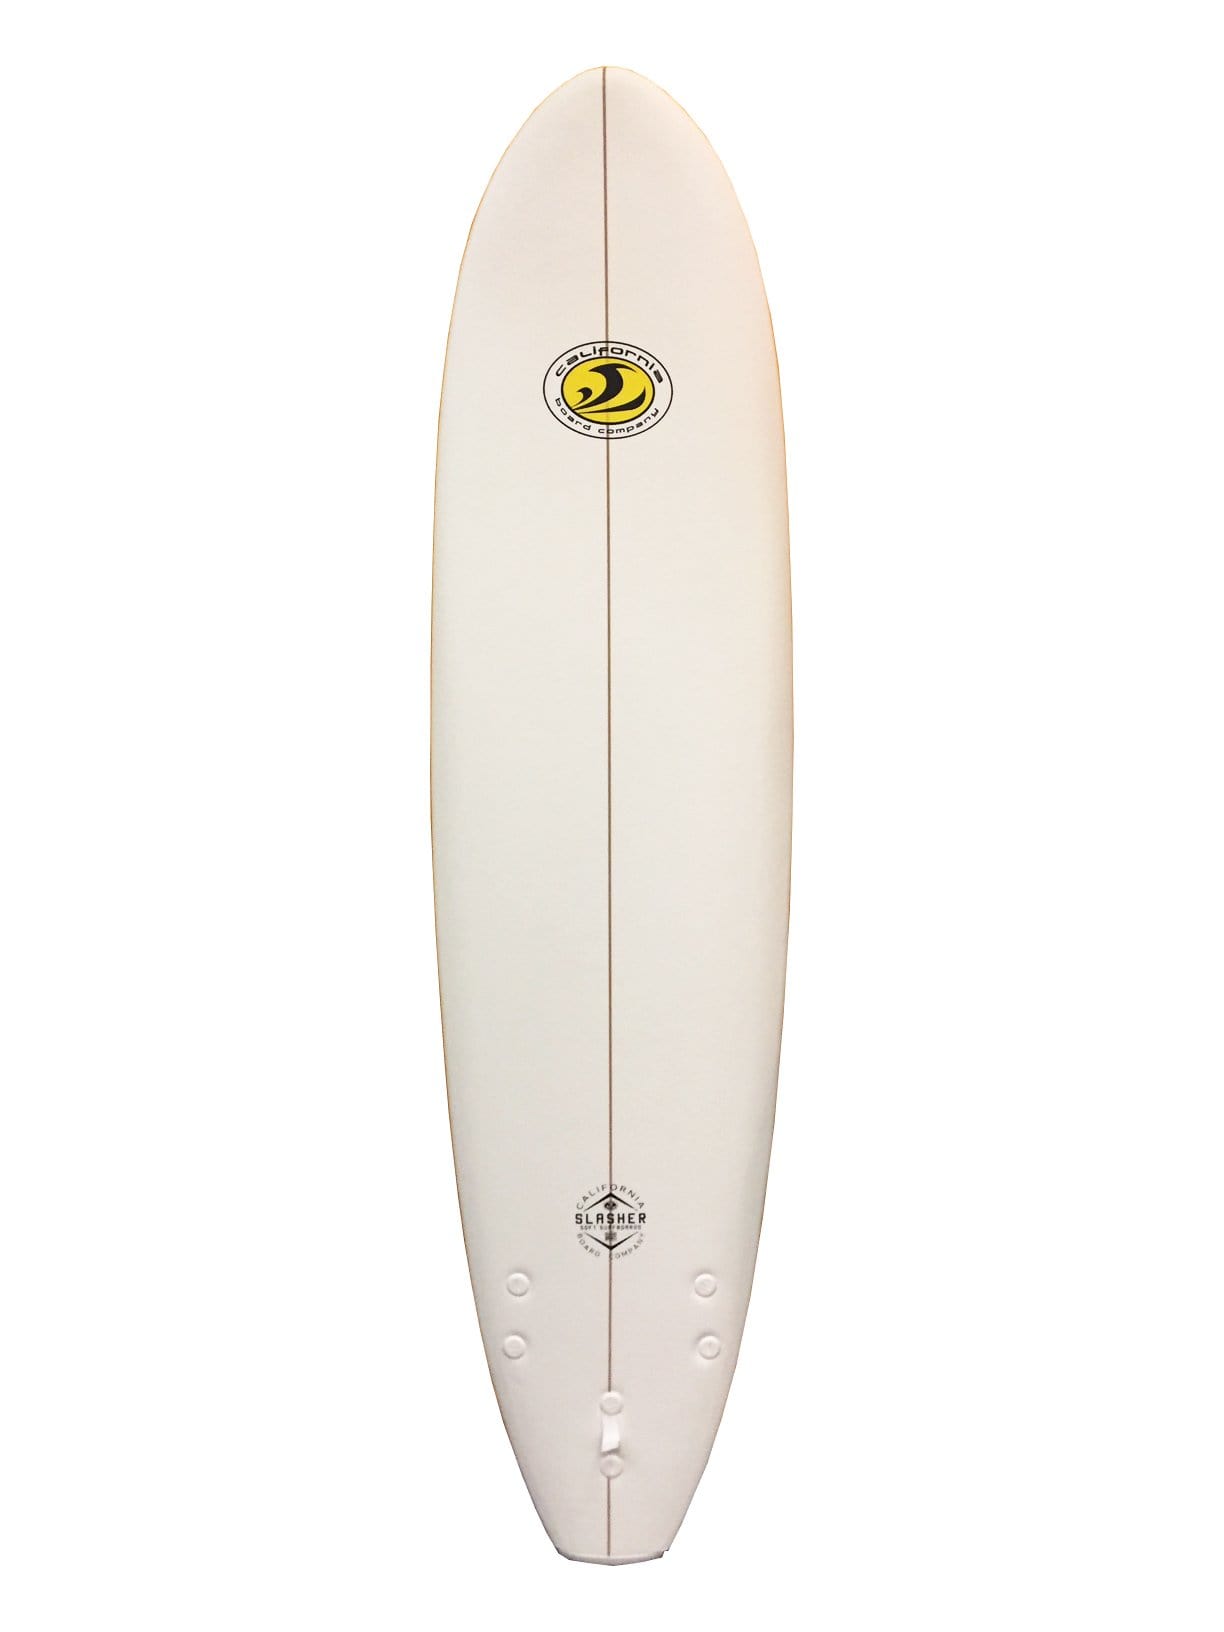 CBC 7'0 Slasher Foam Surfboard